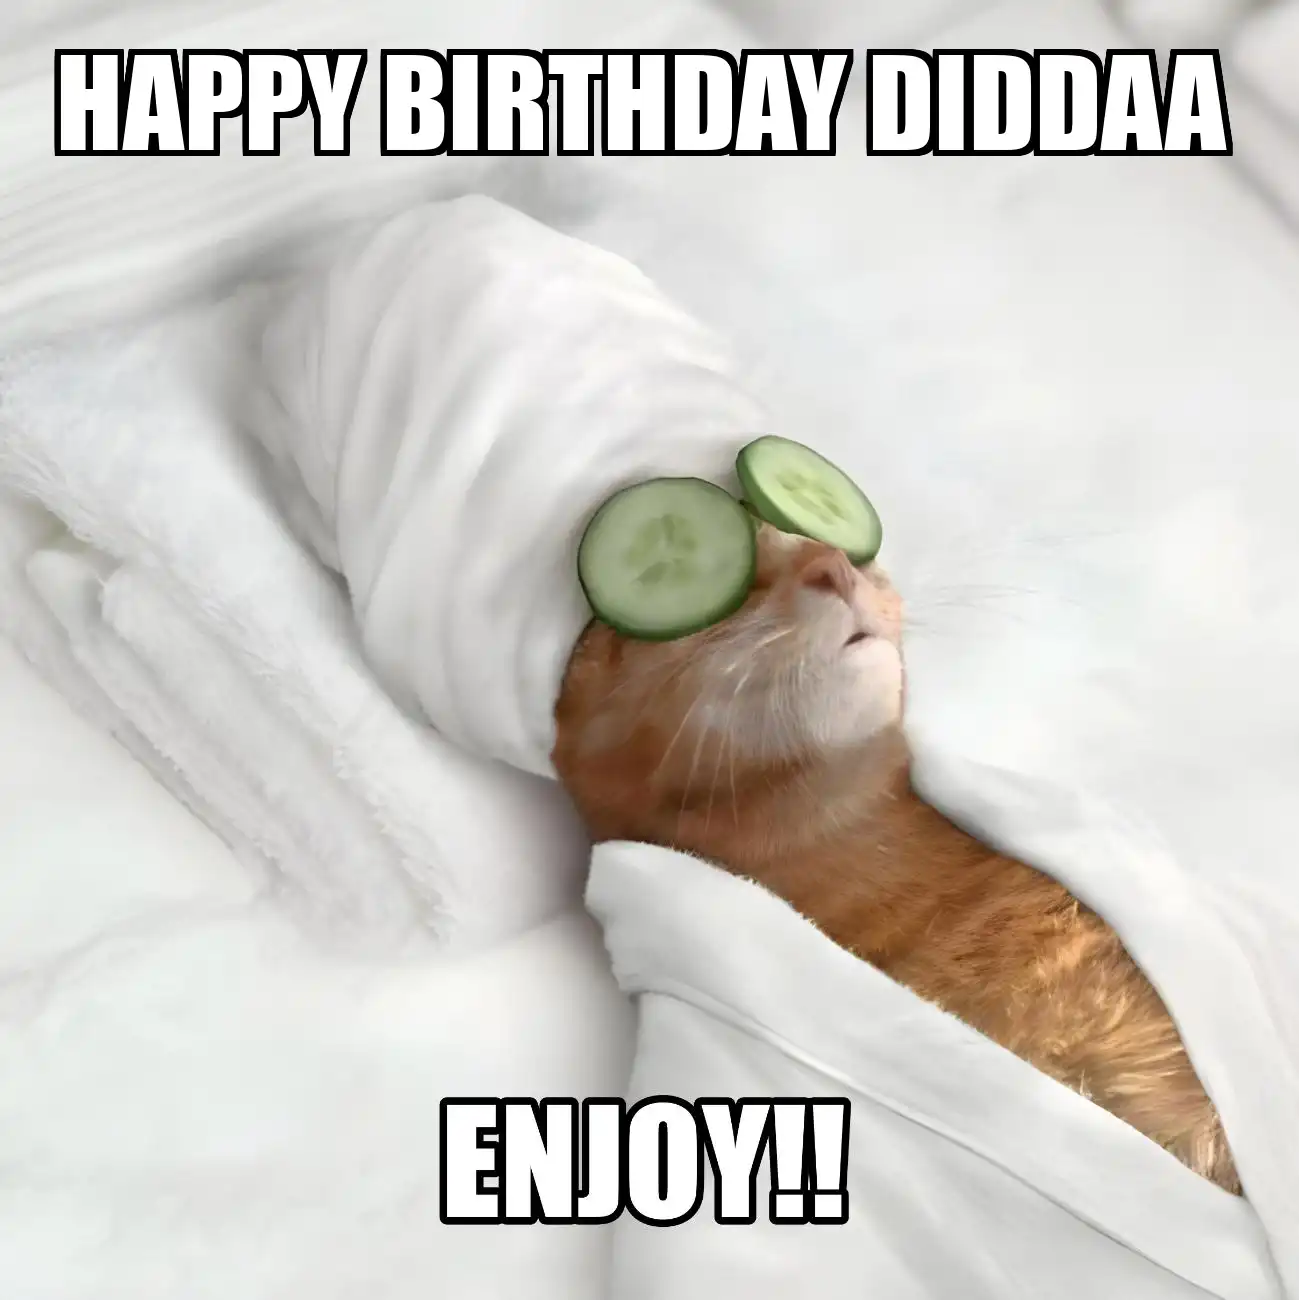 Happy Birthday Diddaa Enjoy Cat Meme